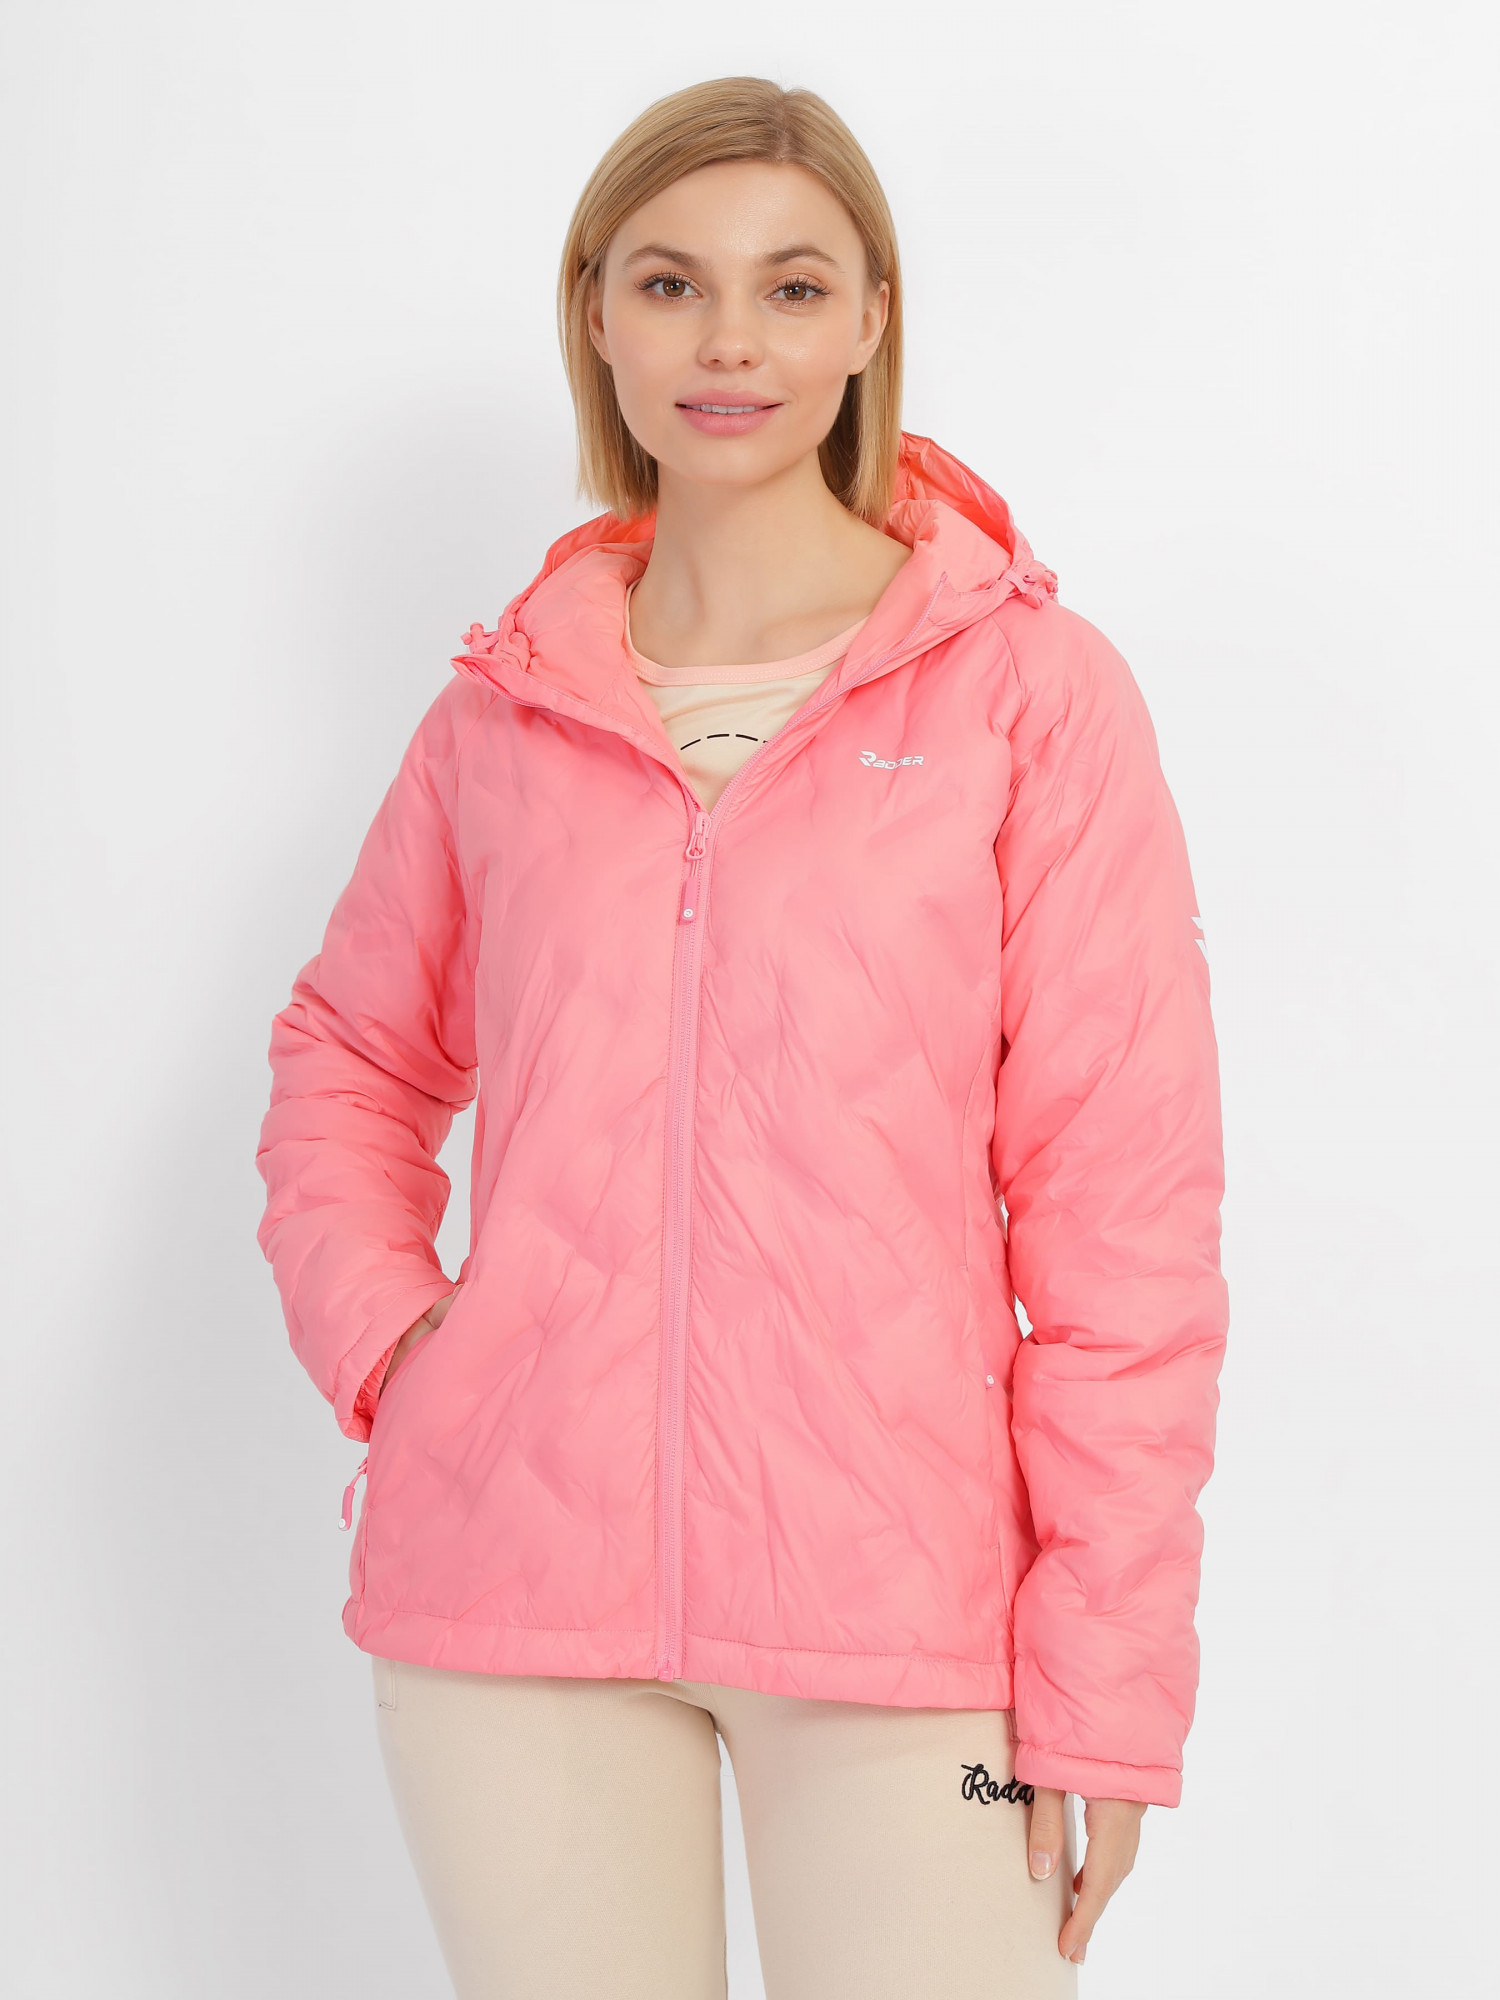 Куртка женская Radder Ally розовый 123307-600 изображение 3